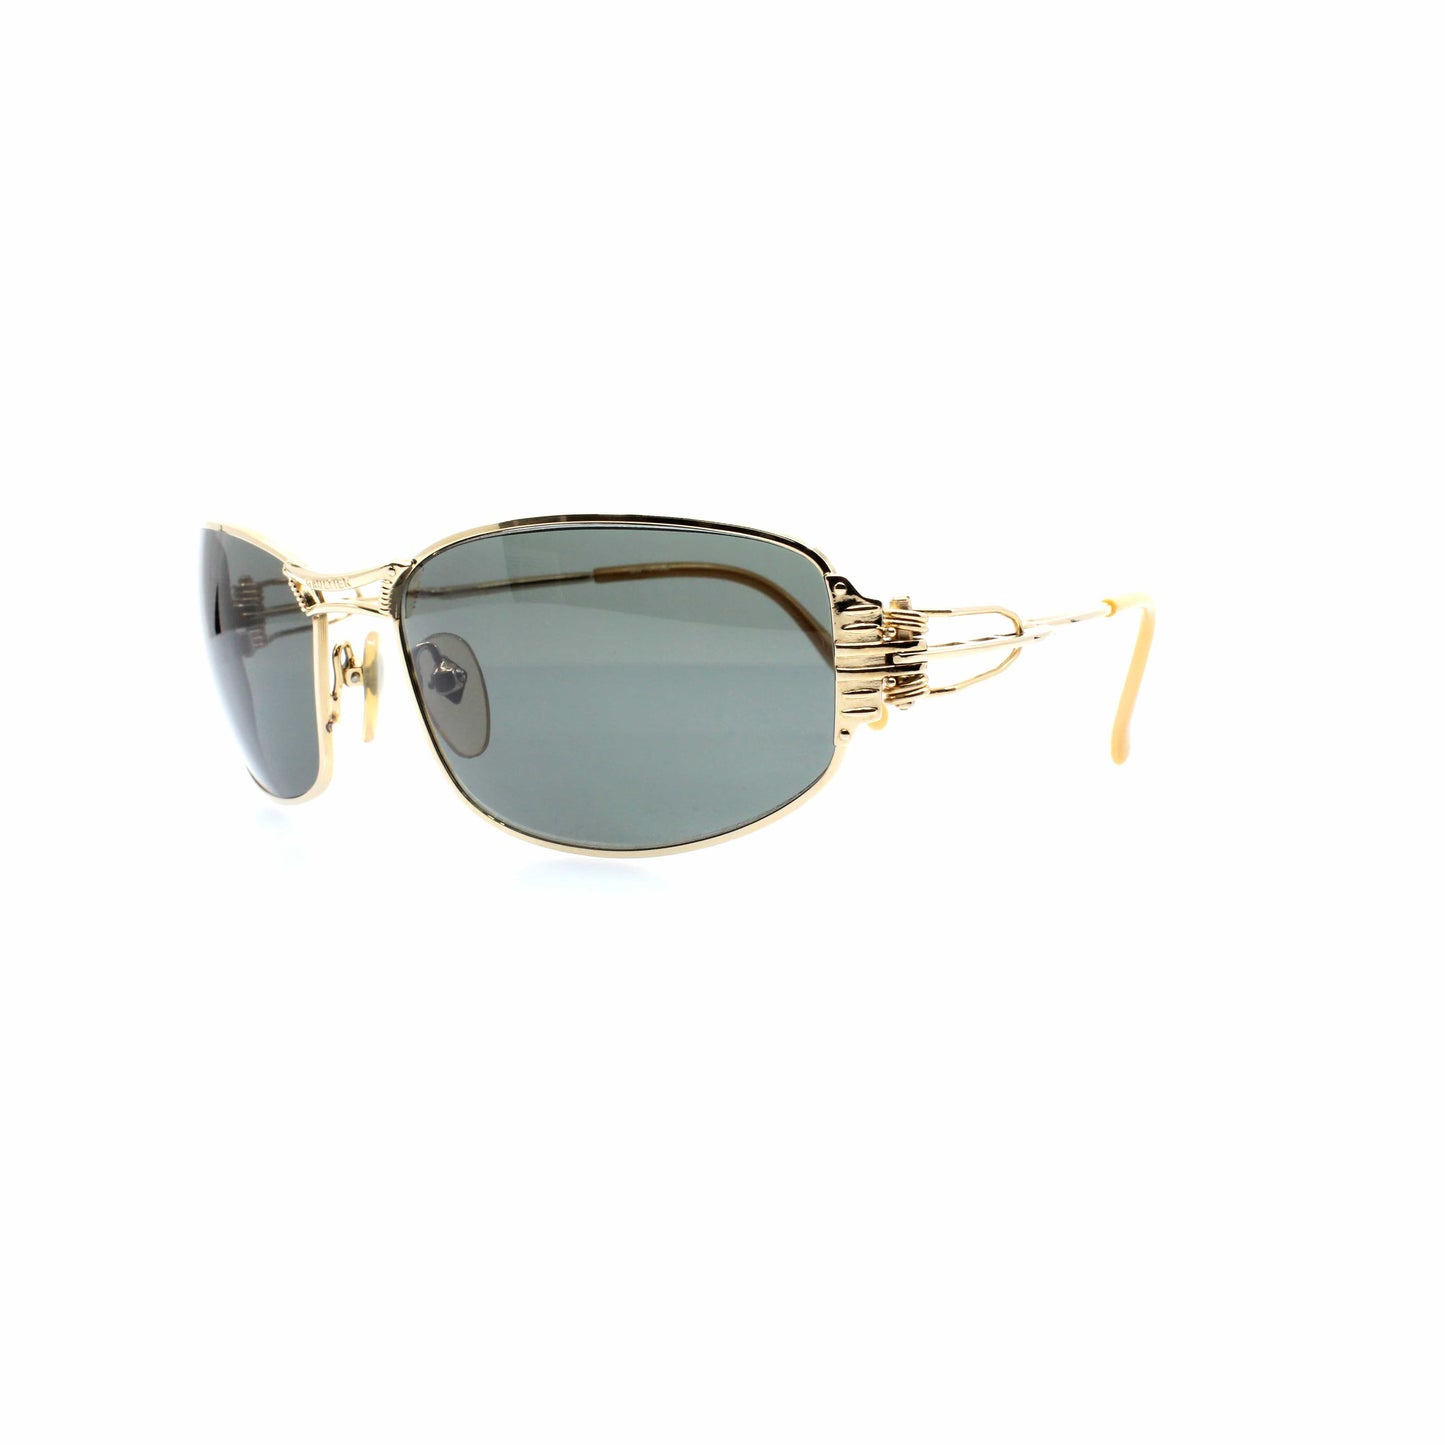 Gold Vintage Jean Paul Gaultier 56-6103 Sunglasses RSTKD Vintage